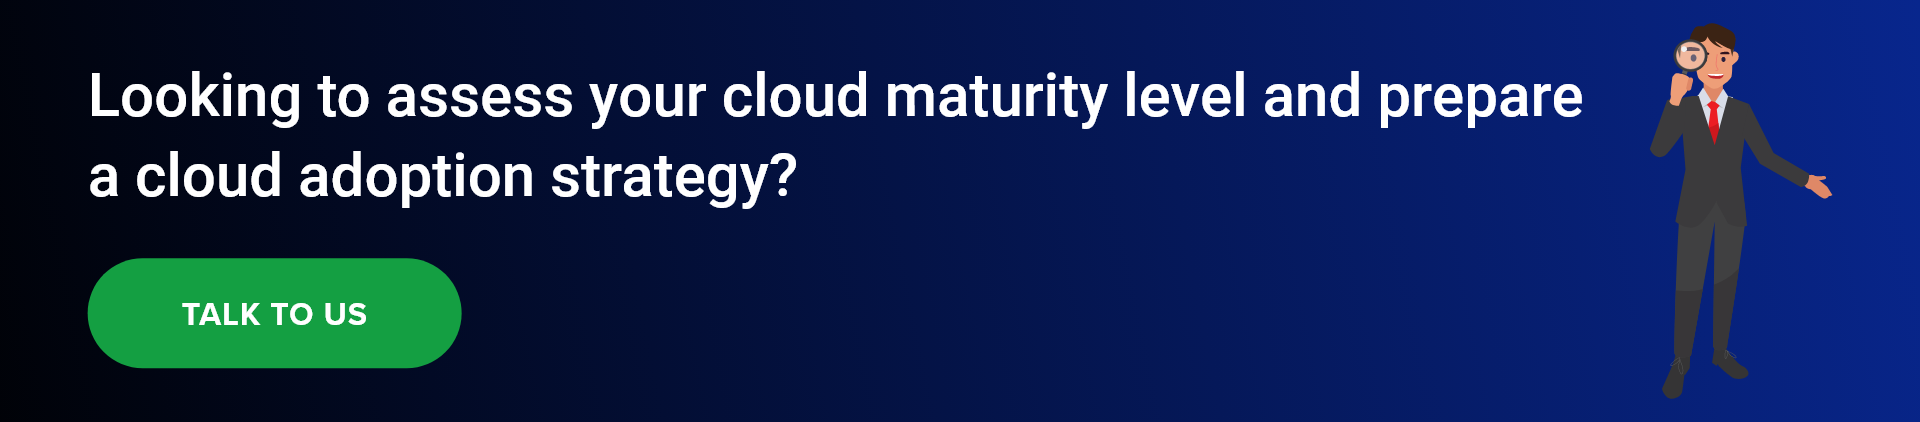 Cloud maturity level CTA